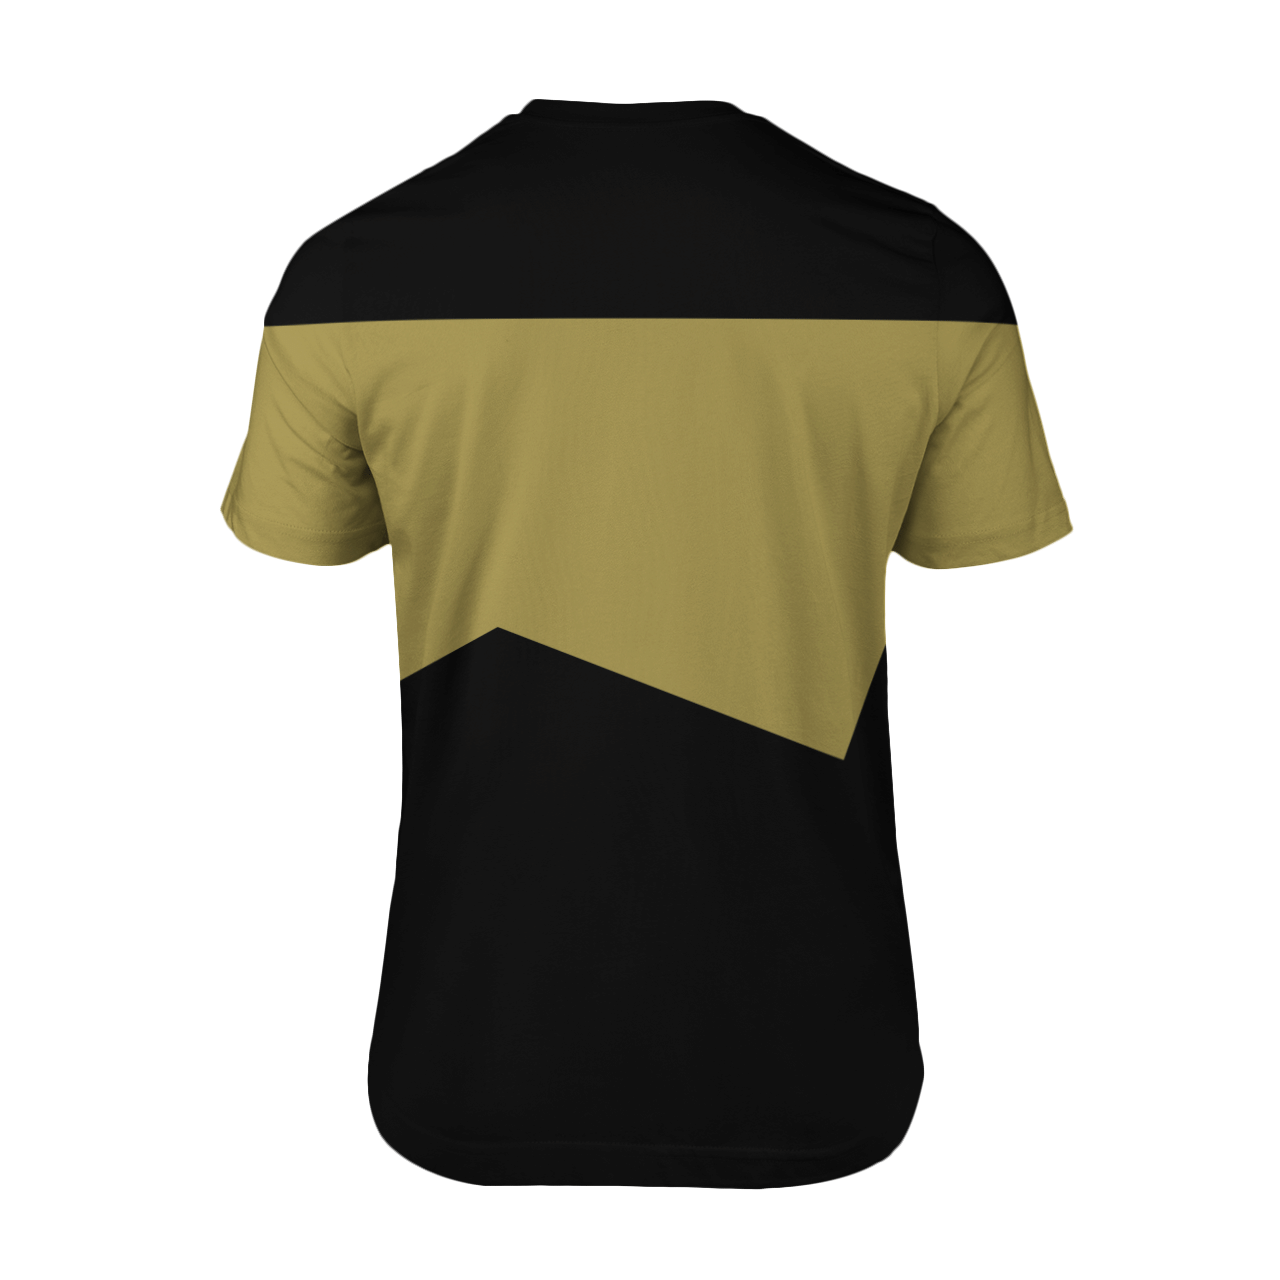 Star Trek Chief engineer 3d shirt 2